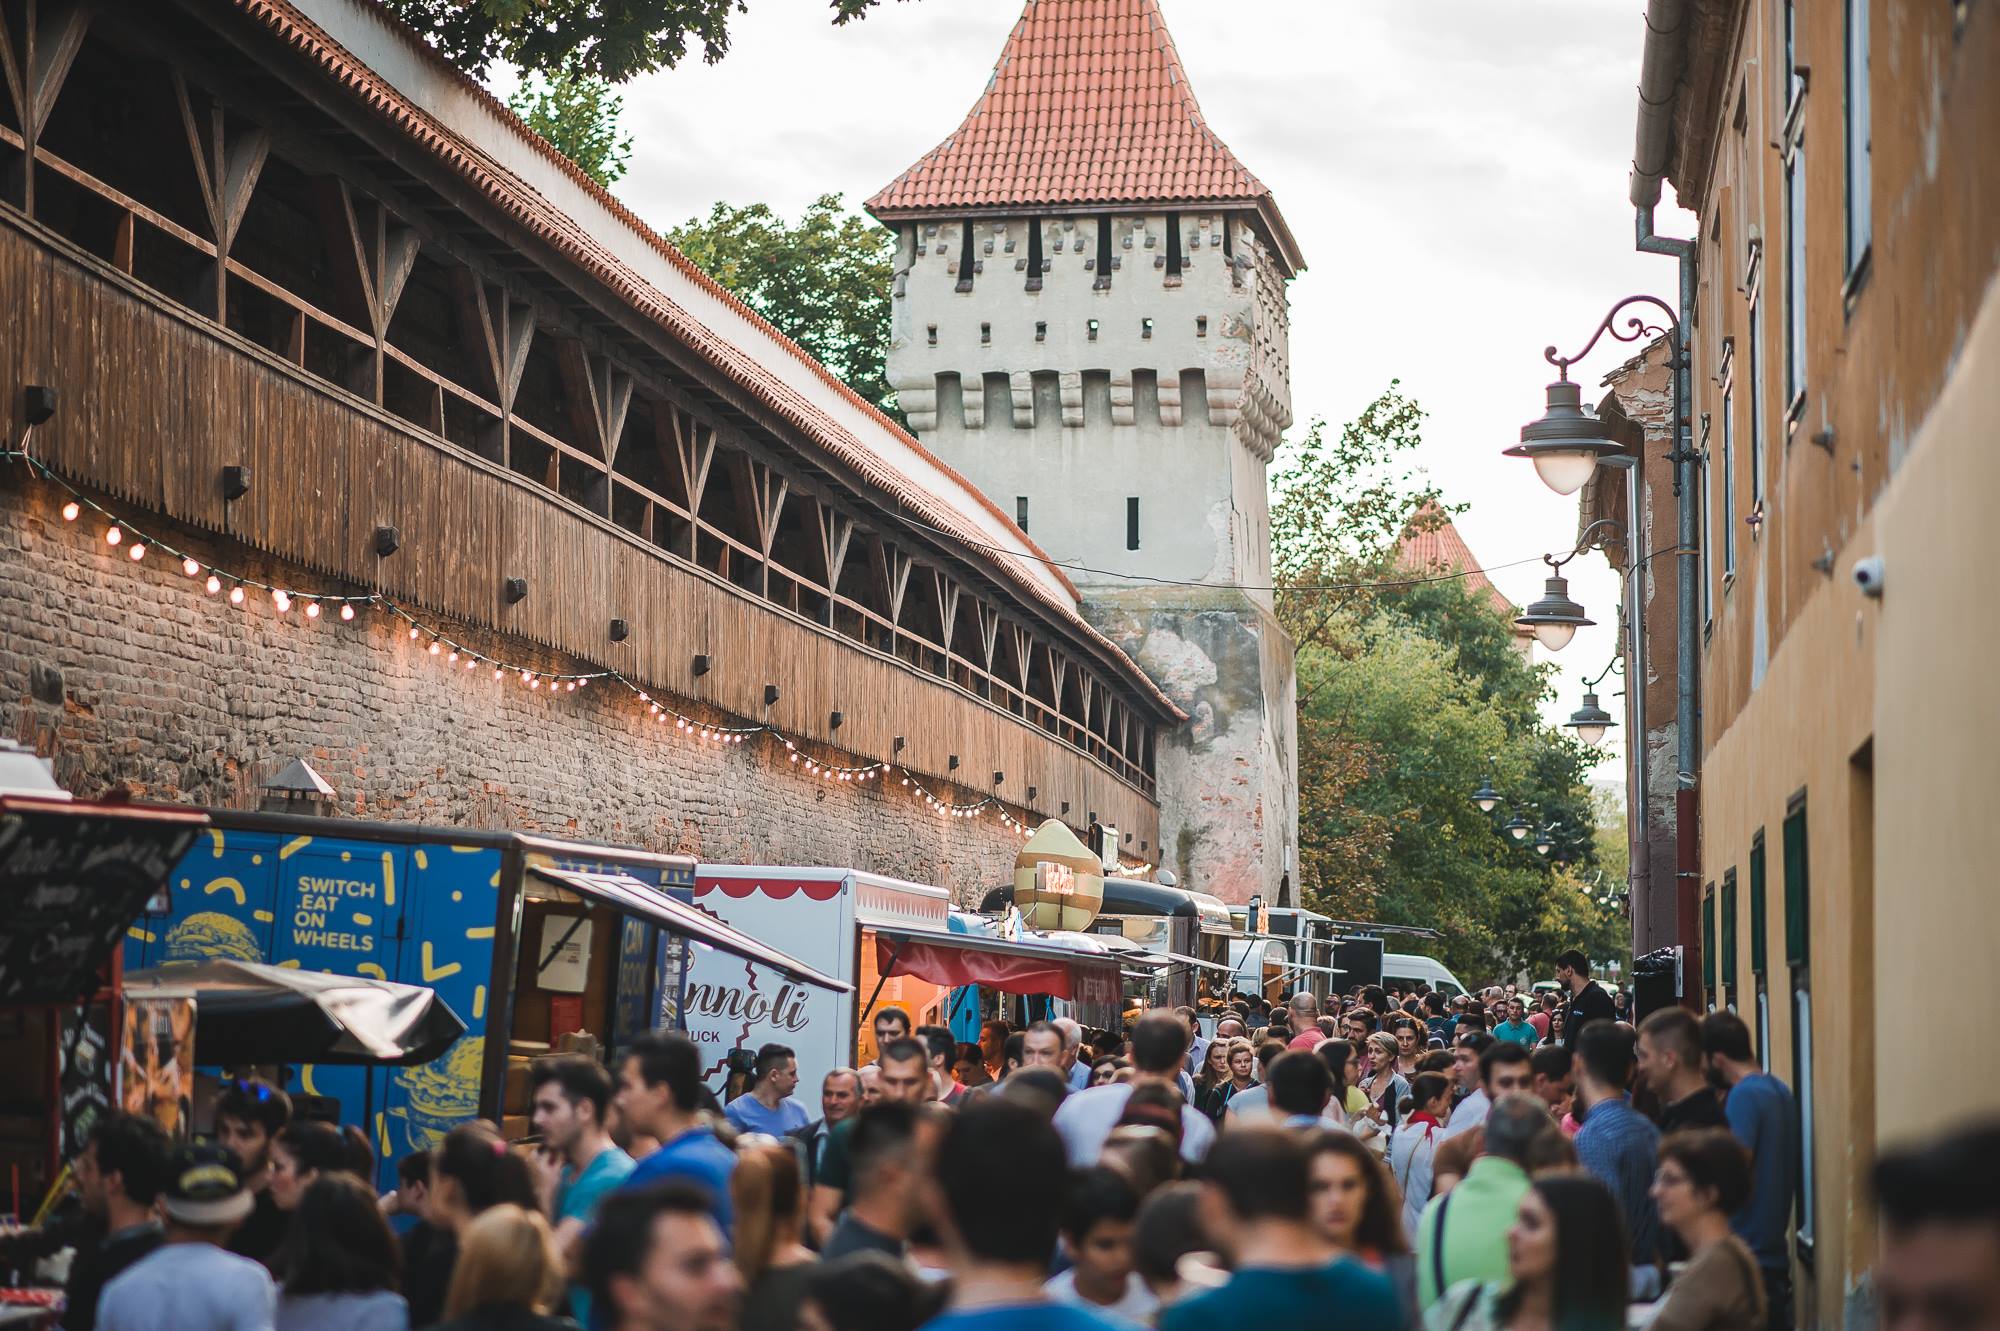 Începe cel mai cunoscut festival de mâncare stradală din Sibiu. Zeci de food truck-uri vă dau întâlnire la Foodie, pe cea mai frumoasă stradă din oraș